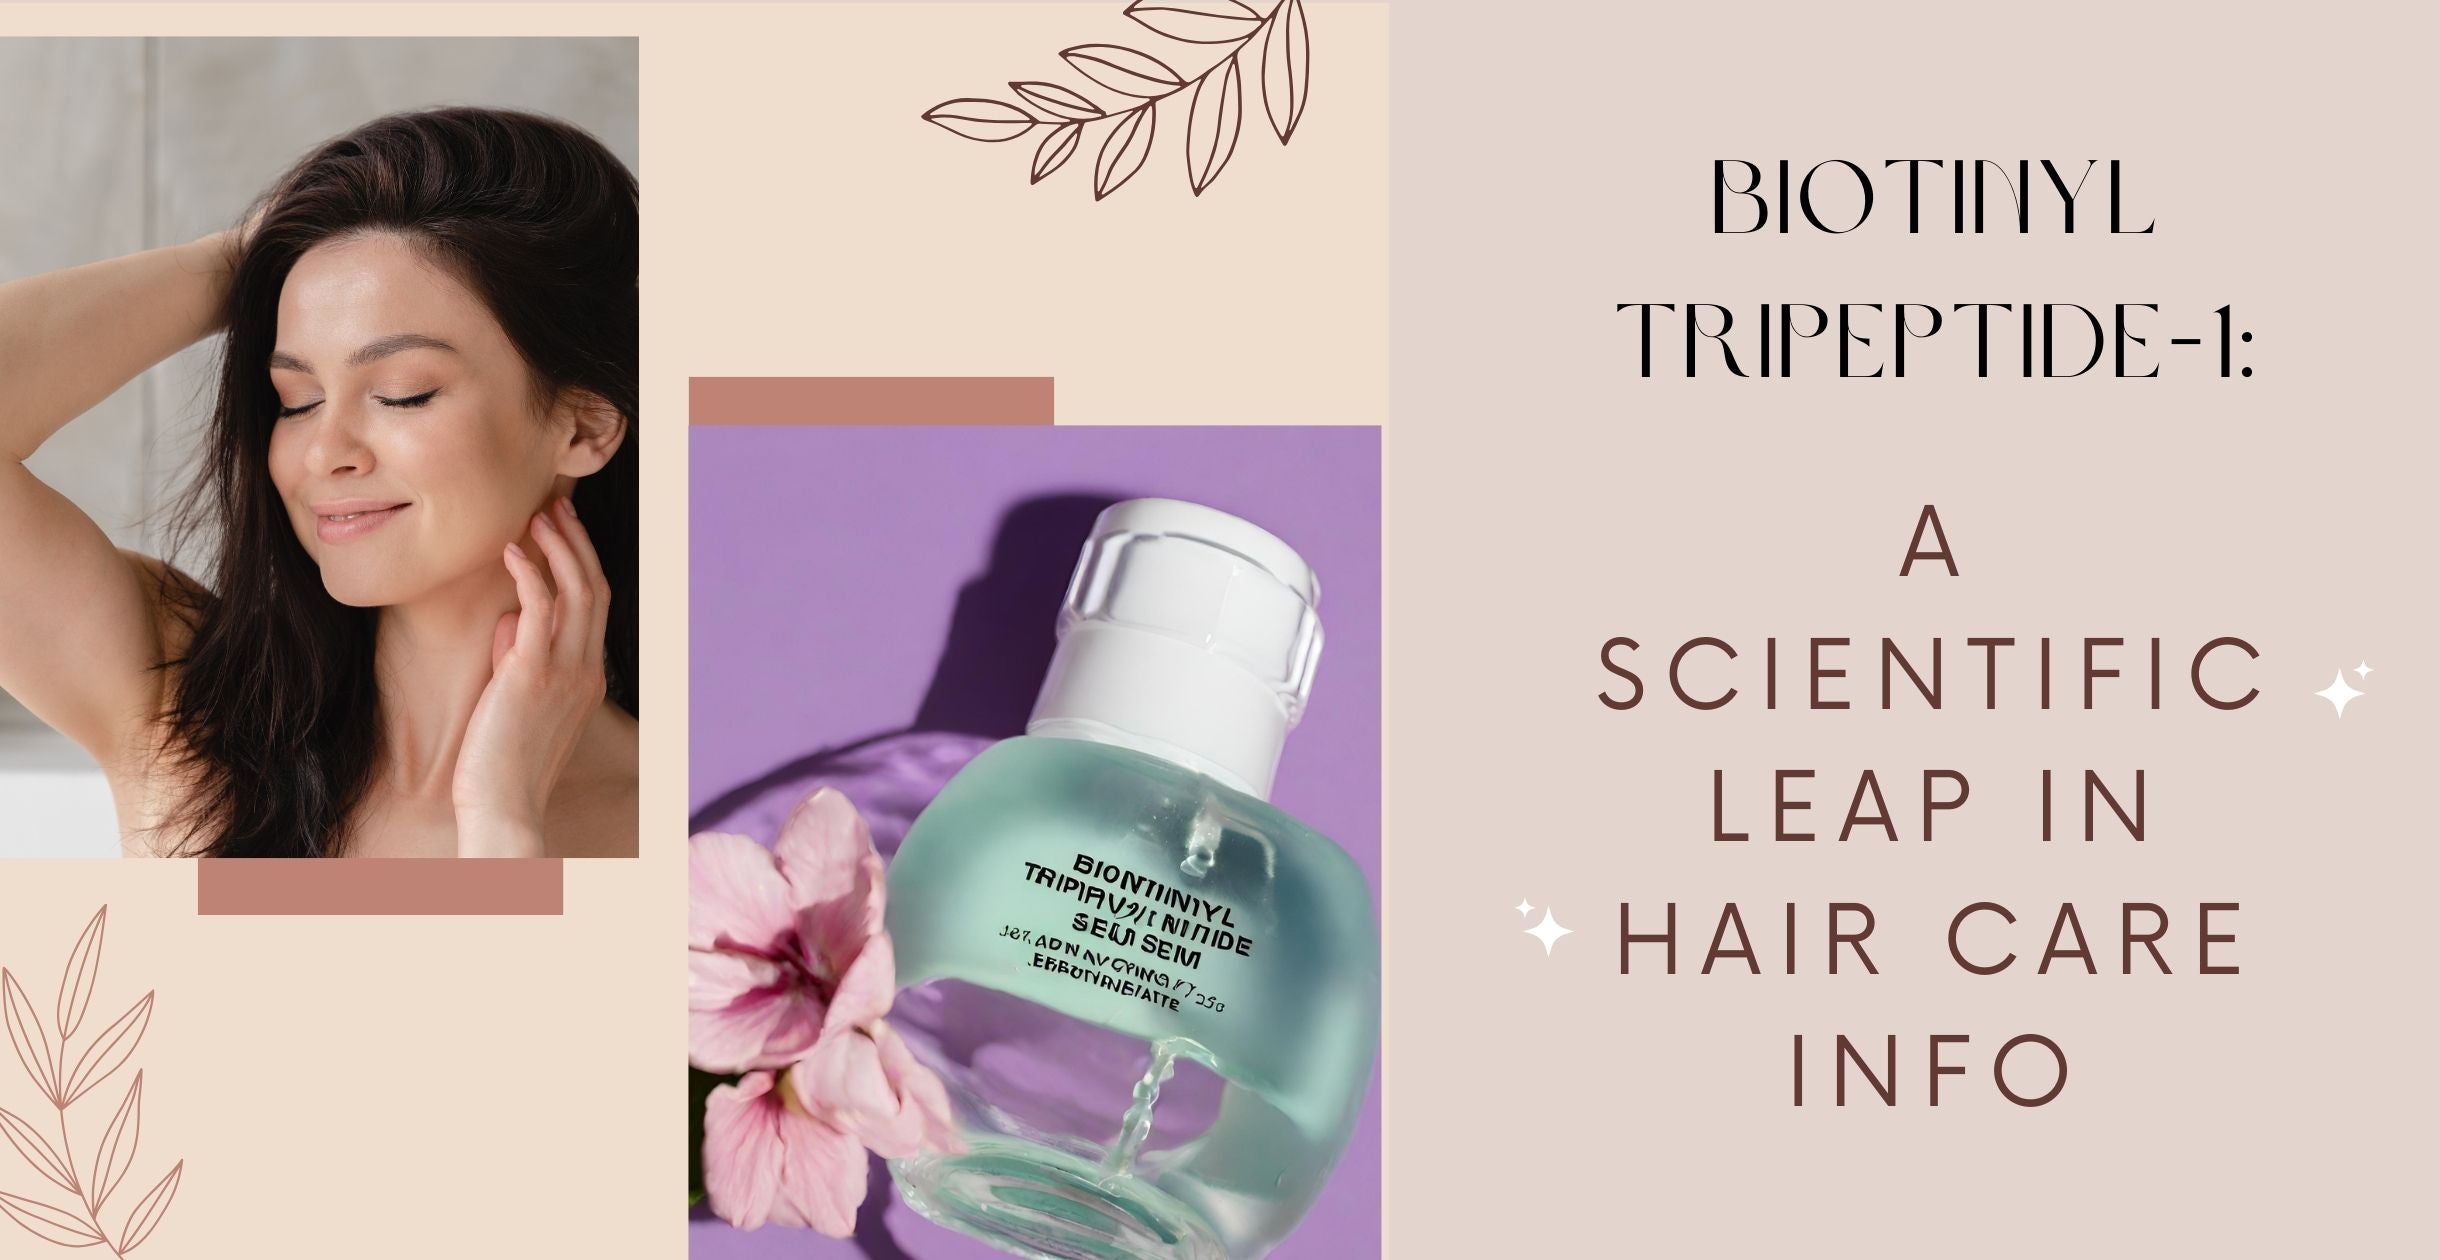 Biotinyl Tripeptide-1: A Scientific Leap in Hair Care